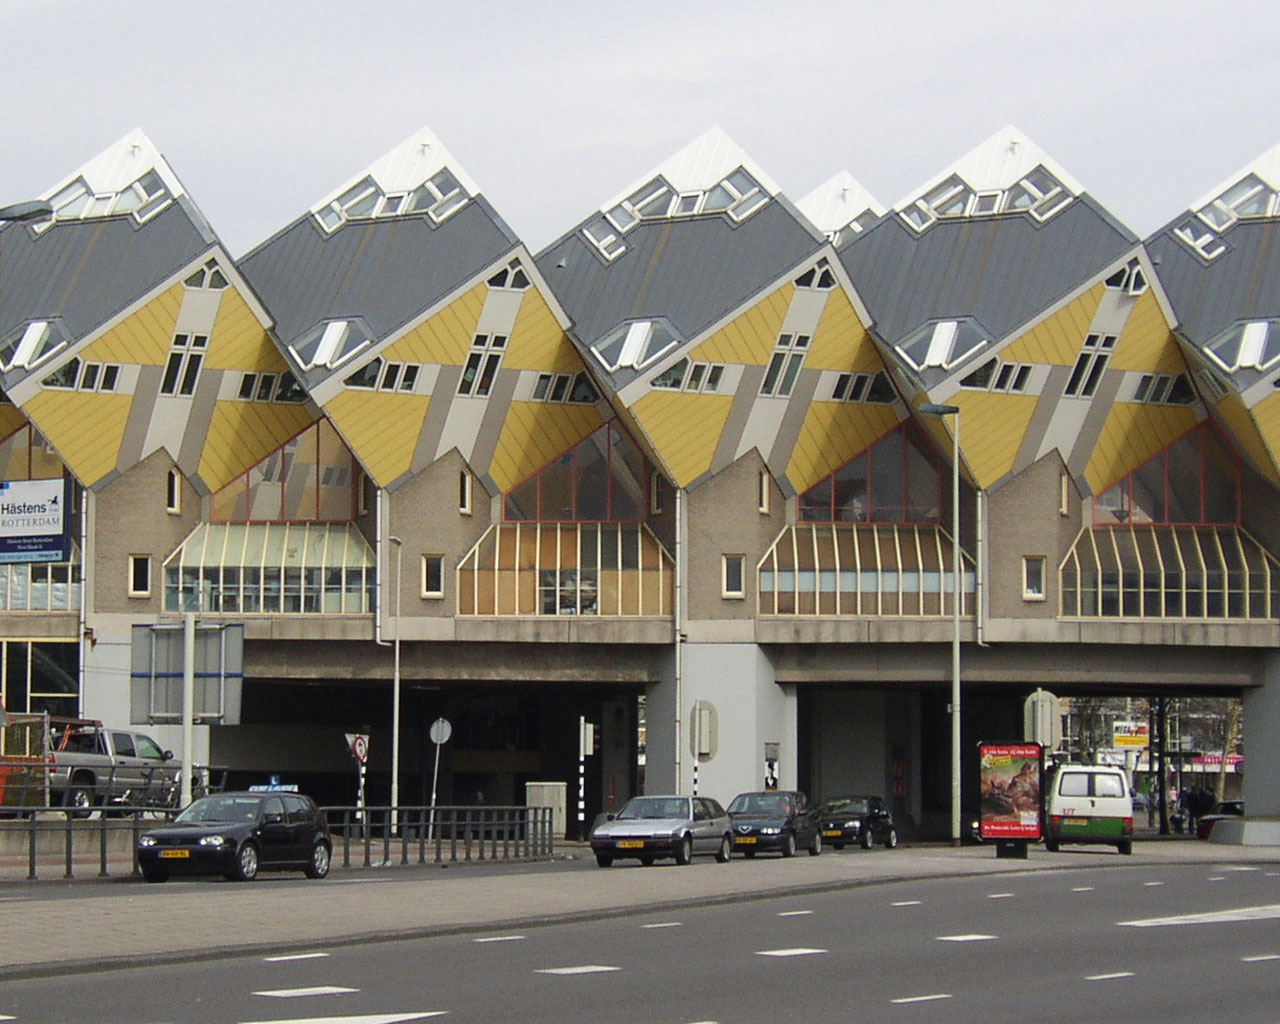 Fotografija prikazuje Kockaste kuće, Rotterdam,  Piet Blom